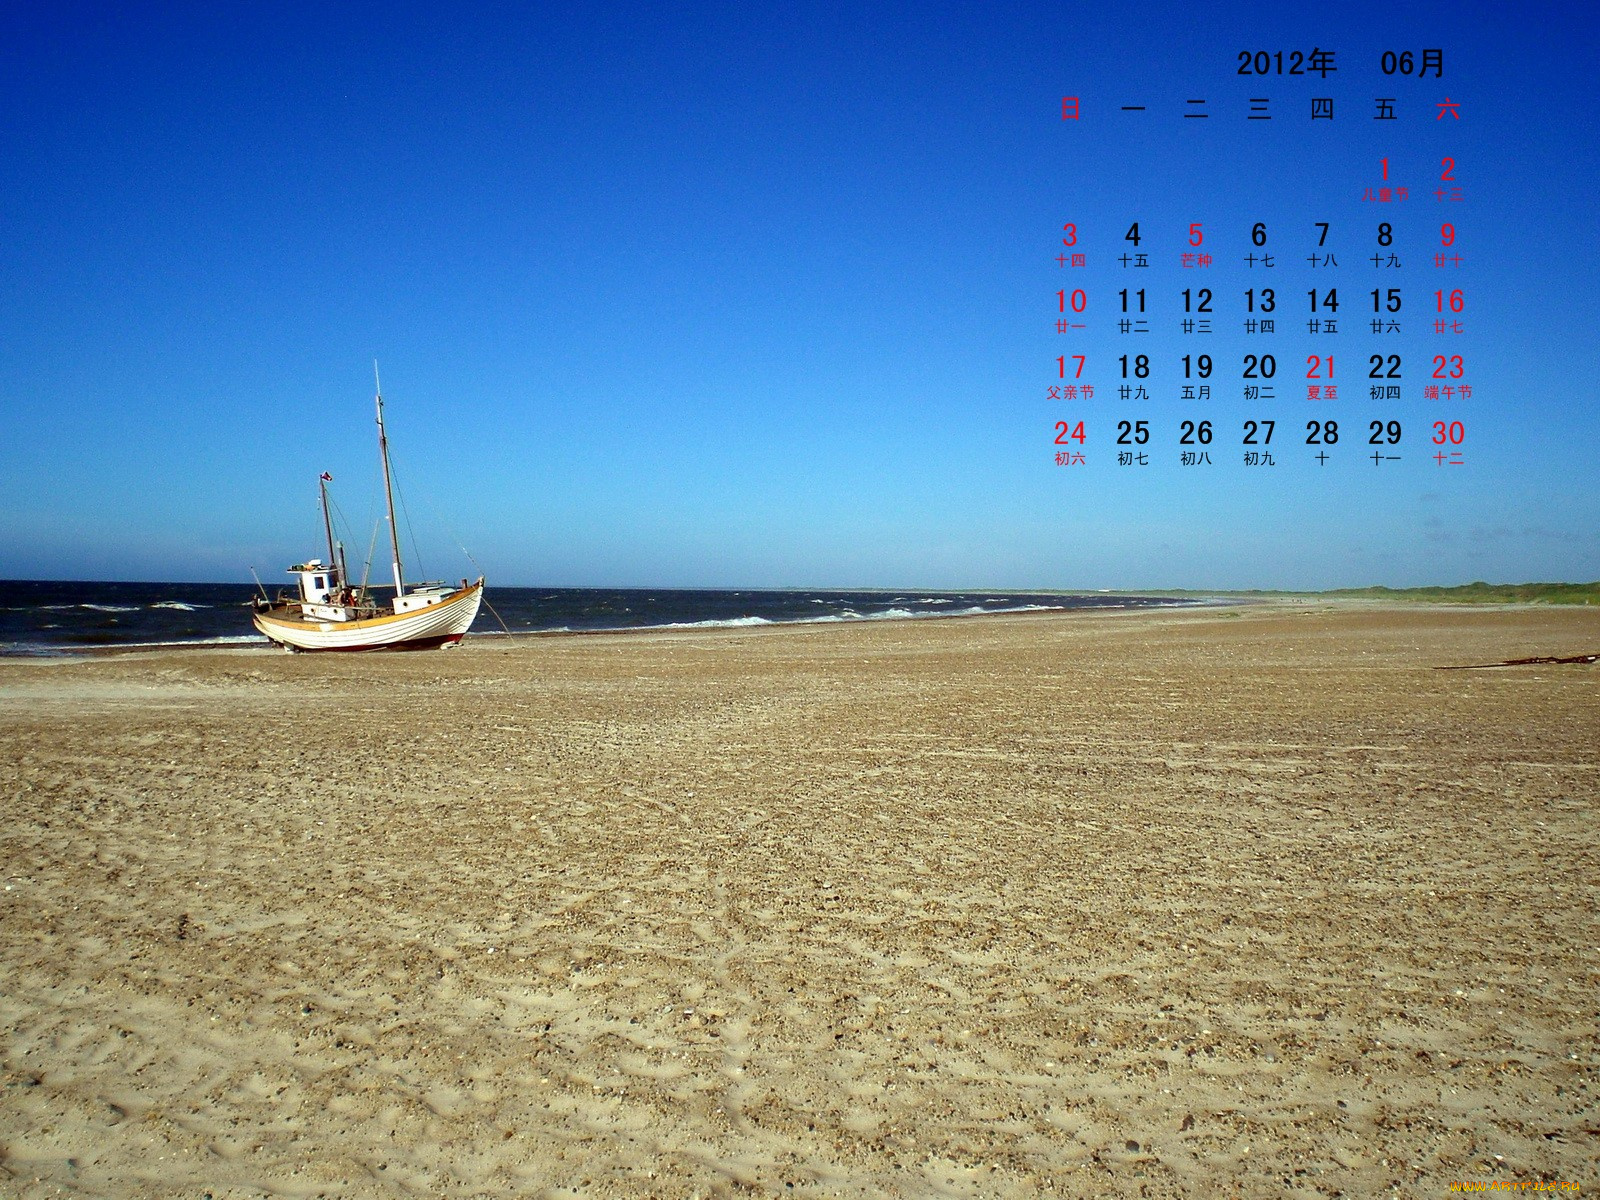 календари, техника, корабли, песок, море